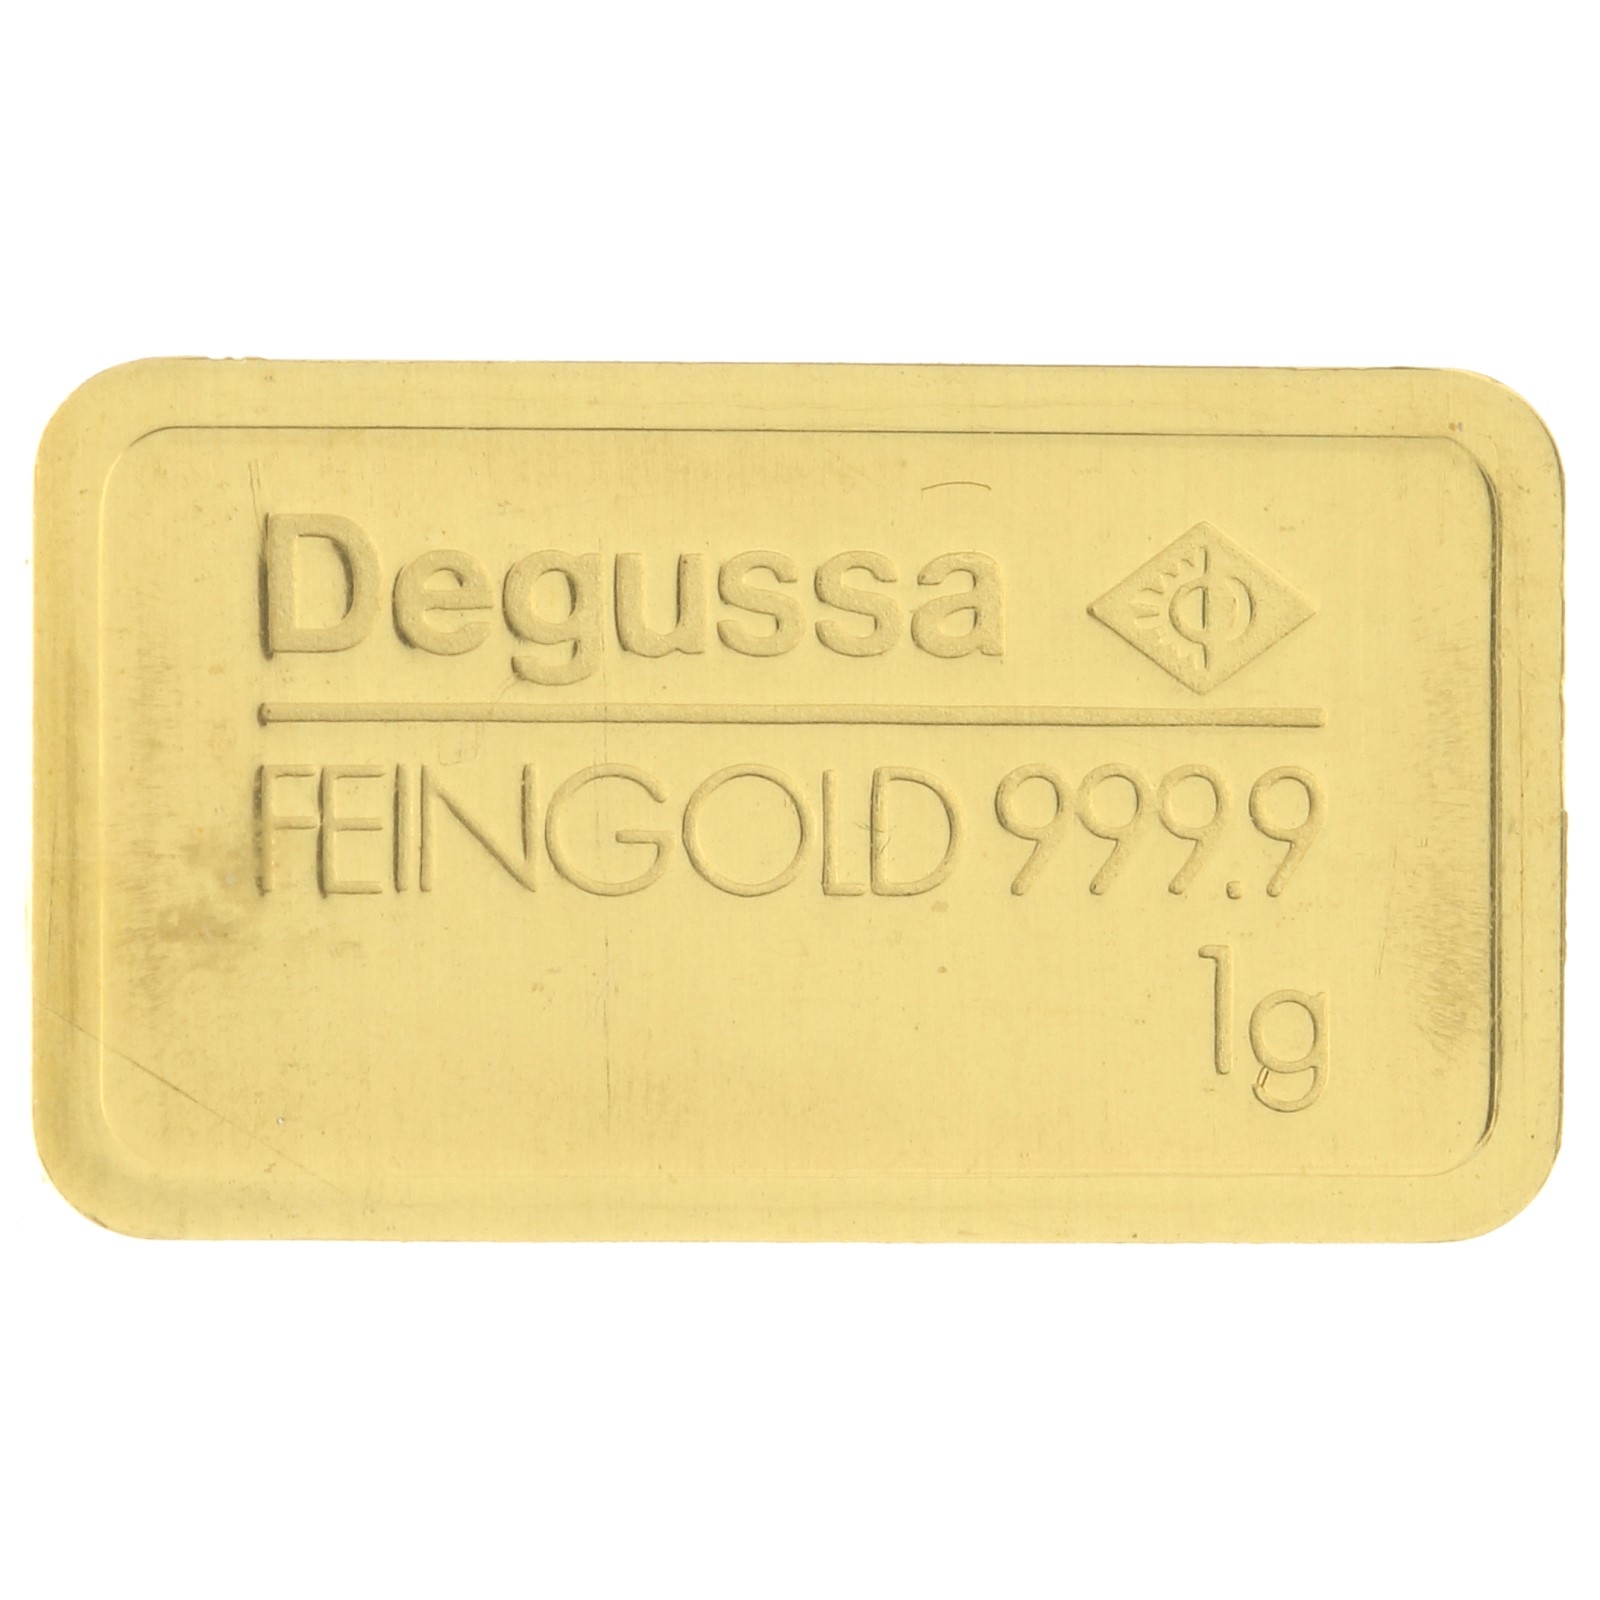 Degussa - 1 gram fine gold - bar